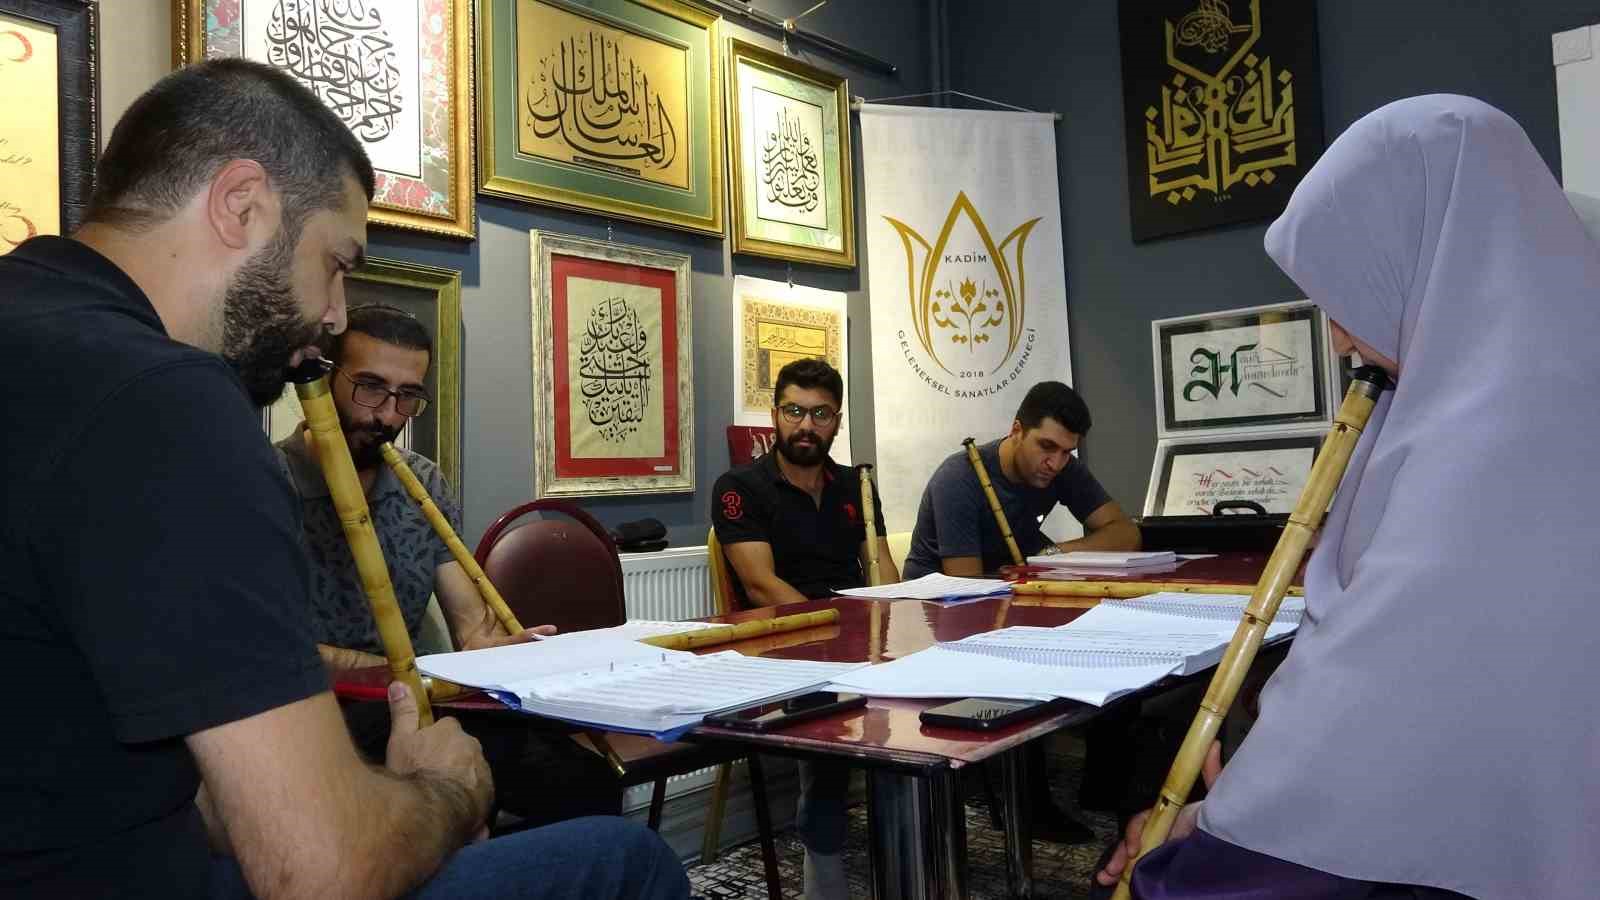 Van’da geleneksel Türk İslam sanatlarına yoğun ilgi